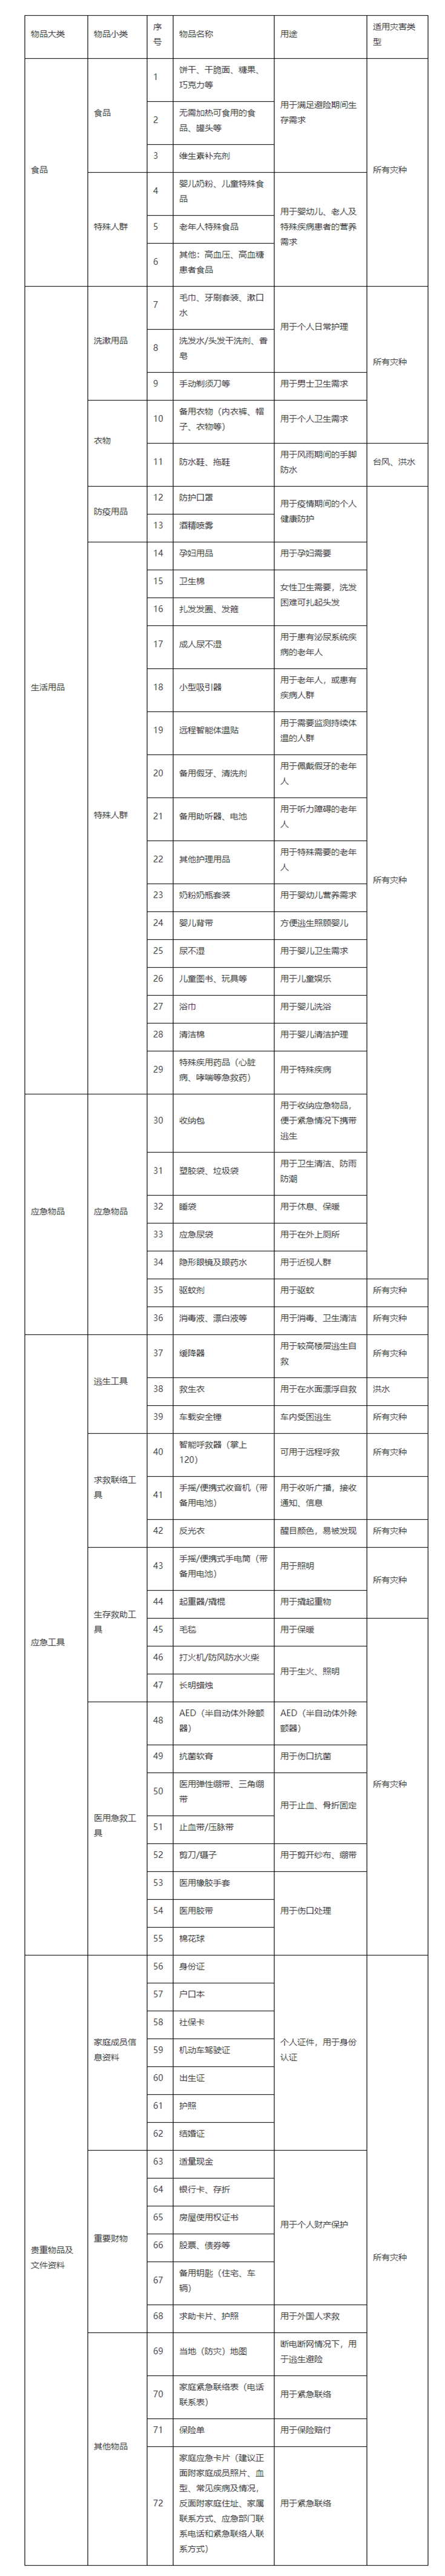 深圳市家庭应急物资储备建议清单（扩充）_副本.png